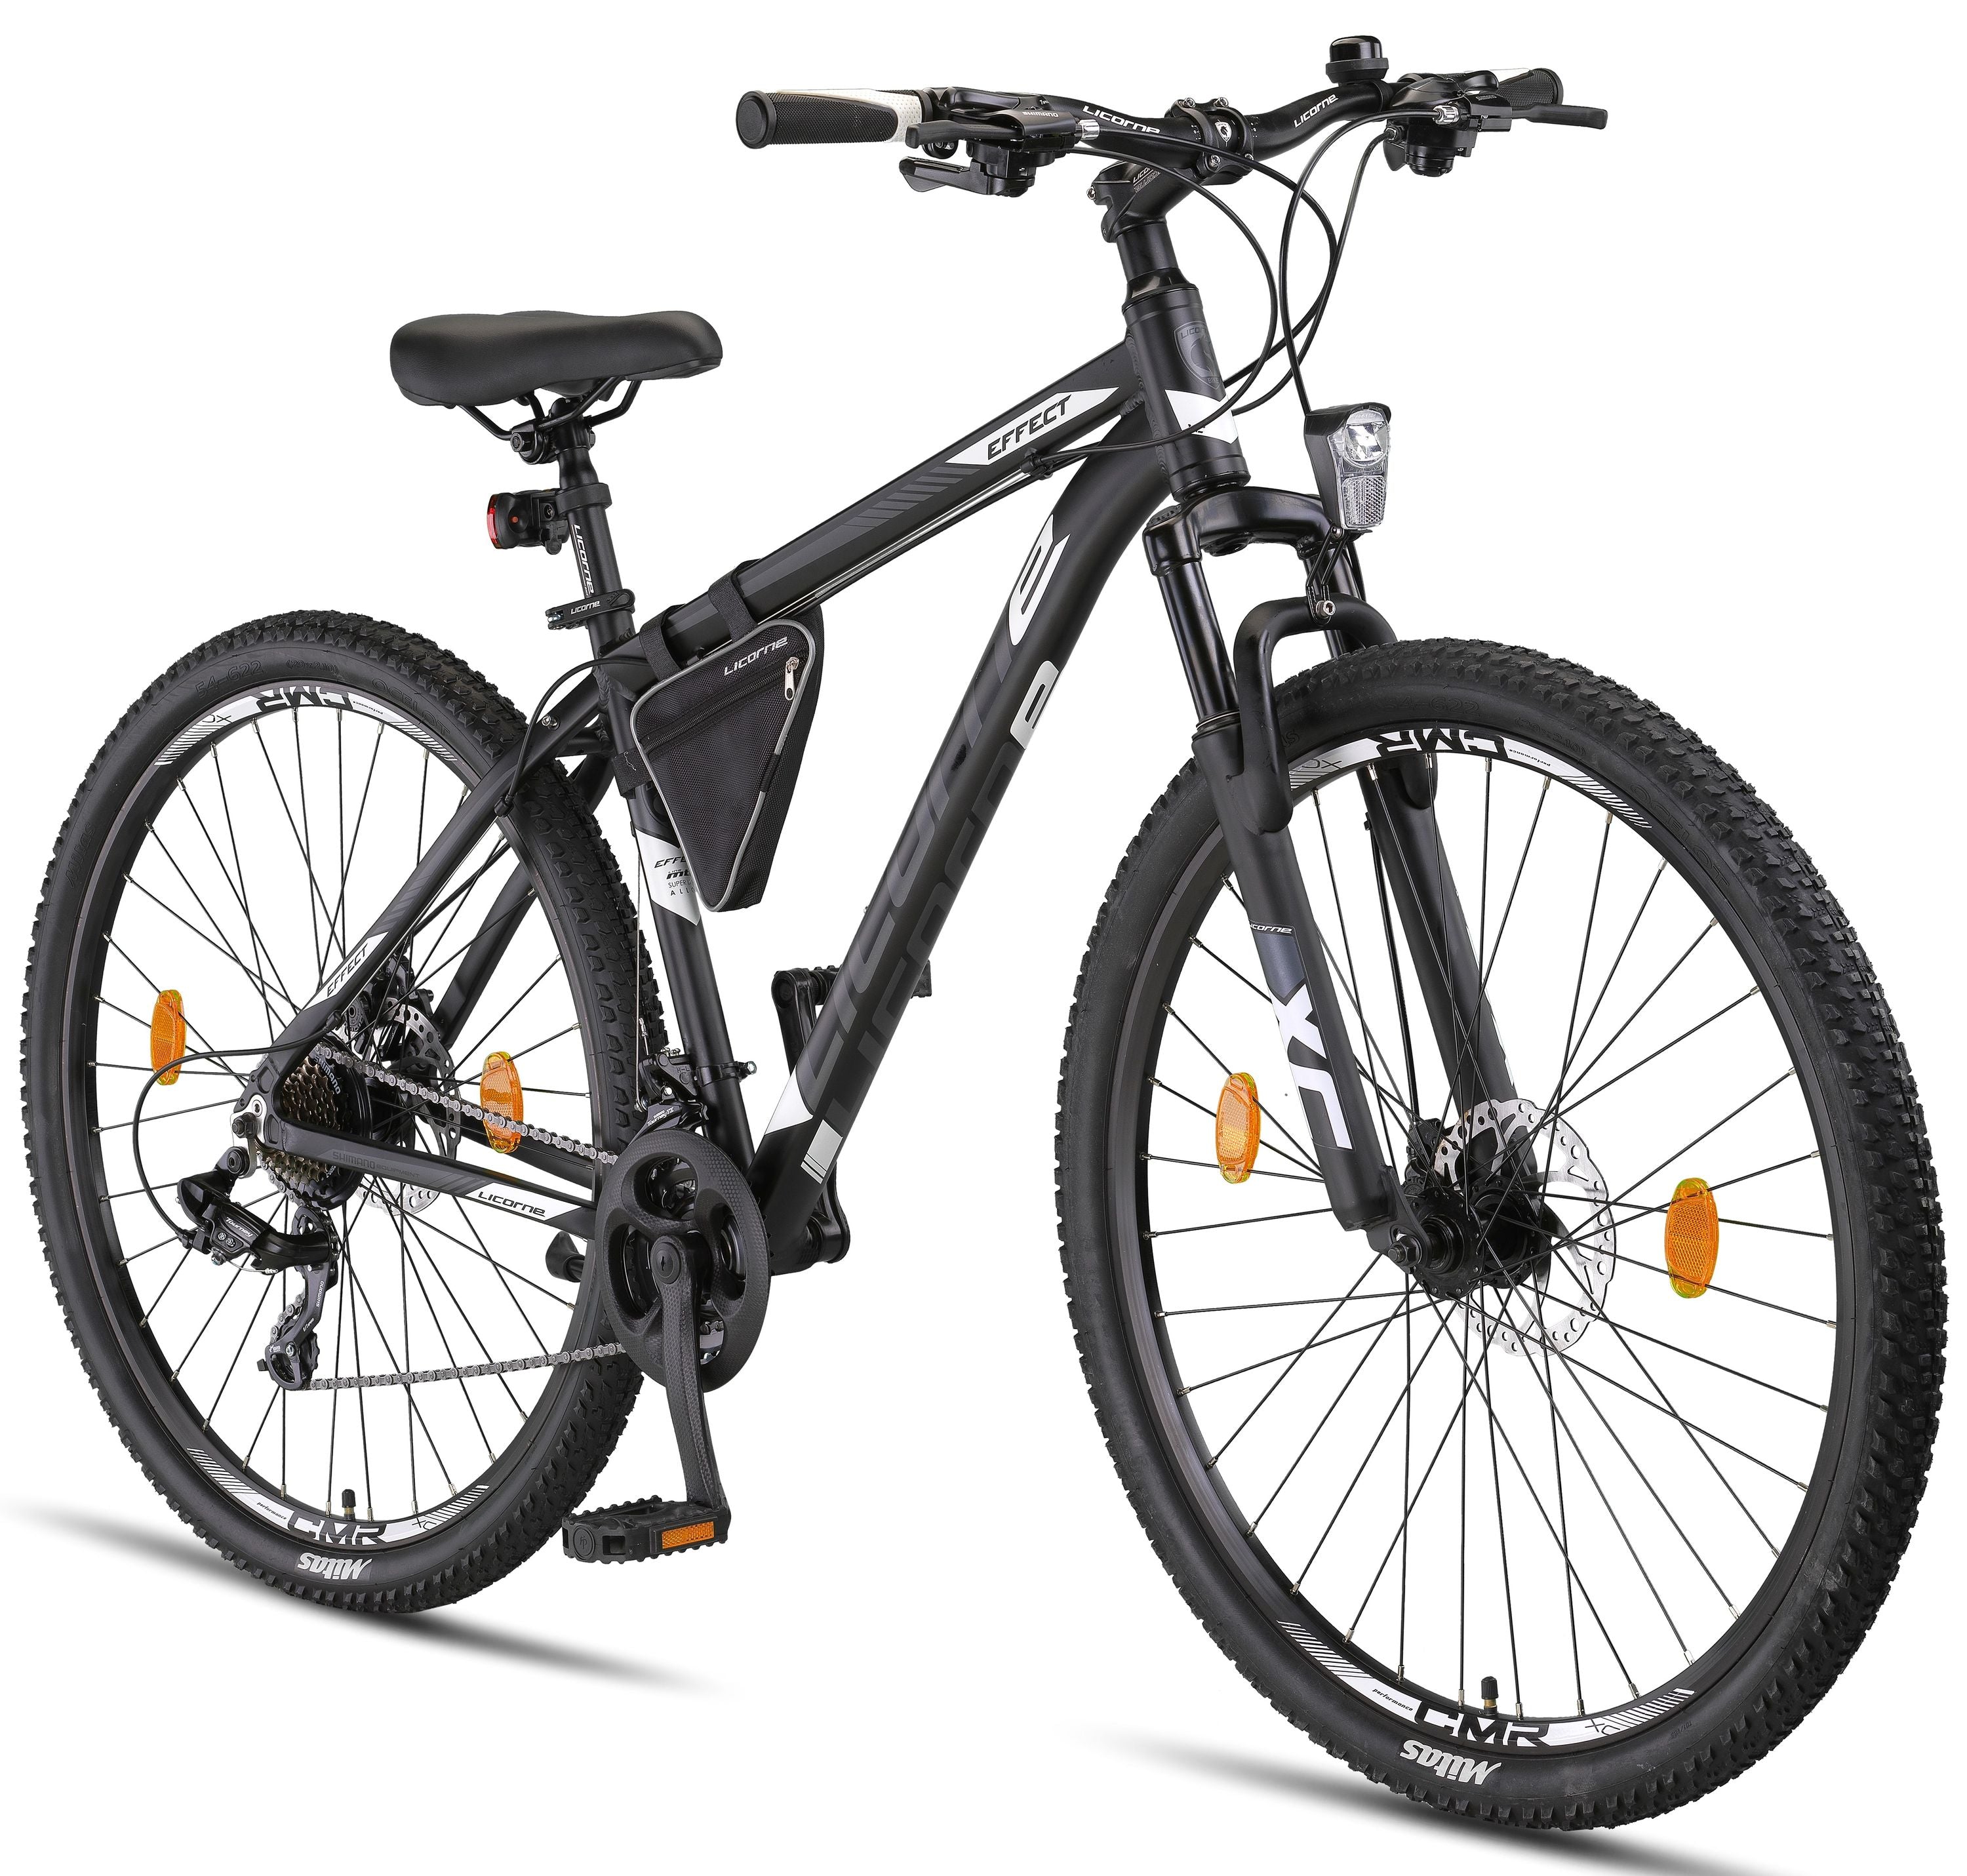 Licorne Bike Effect mountain bike premium da 26, 27,5 e 29 pollici - bici per ragazzi, ragazze, uomini e donne - cambio Shimano a 21 velocità - bici da uomo